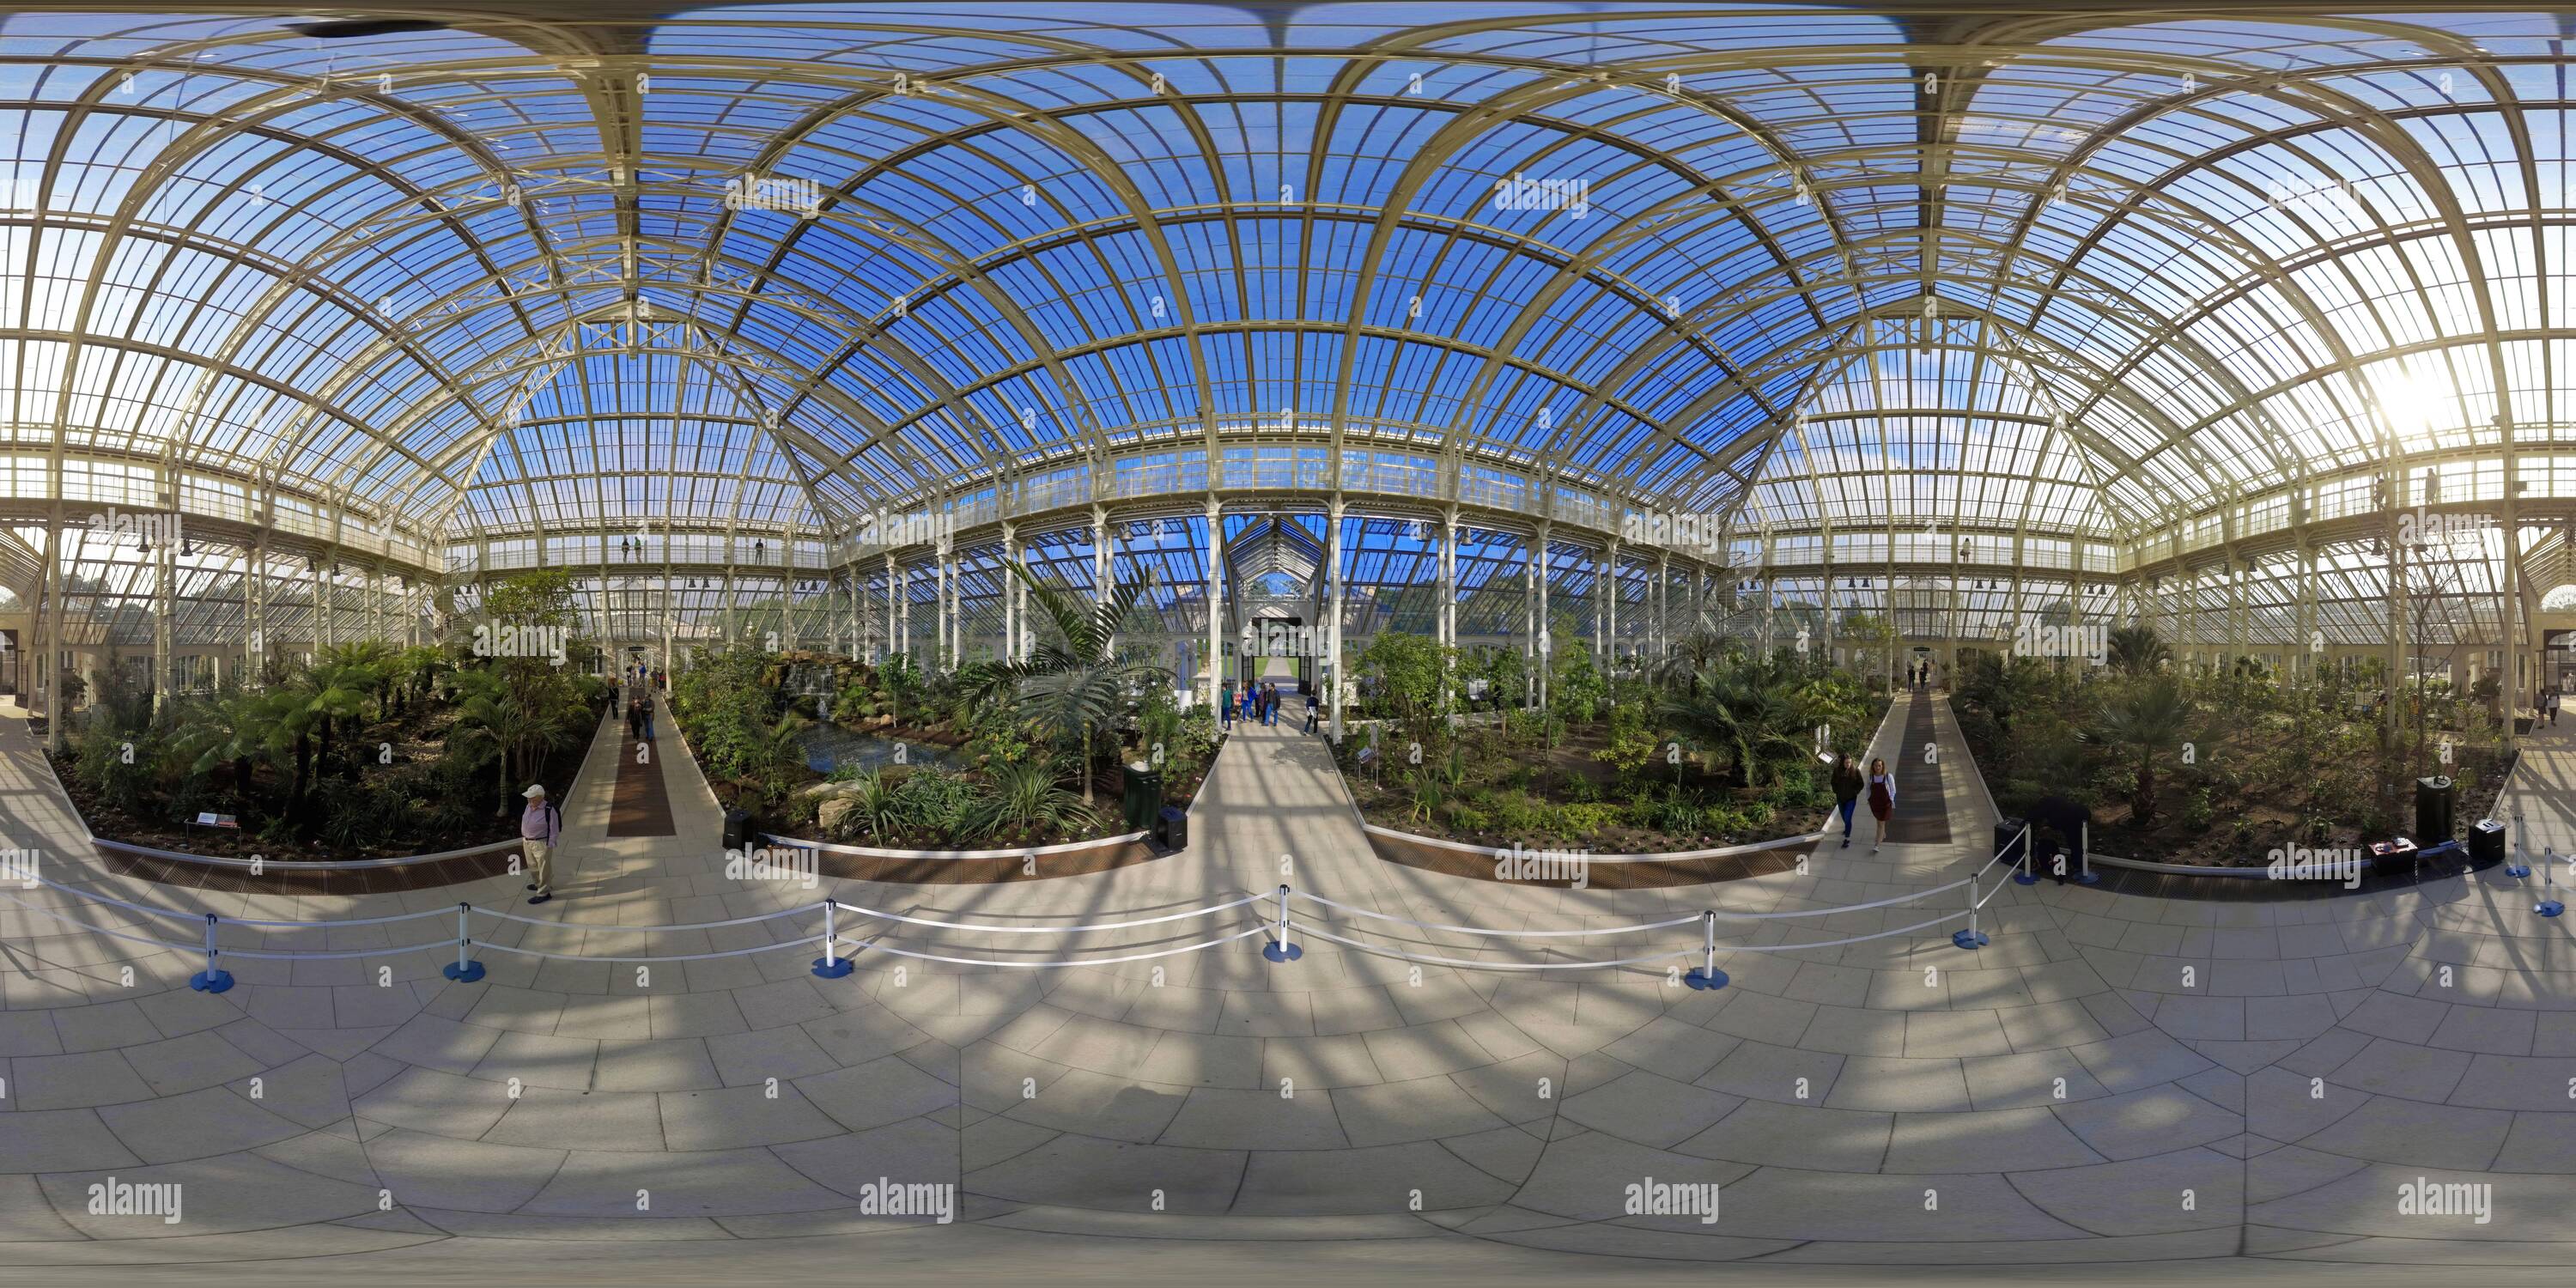 360 Grad Panorama Ansicht von Werfen Sie einen Blick auf das größte viktorianische Glashaus der Welt, das gemäßigte Haus in Kew Gardens. Bildnachweis: © Mark Pain / Alamy